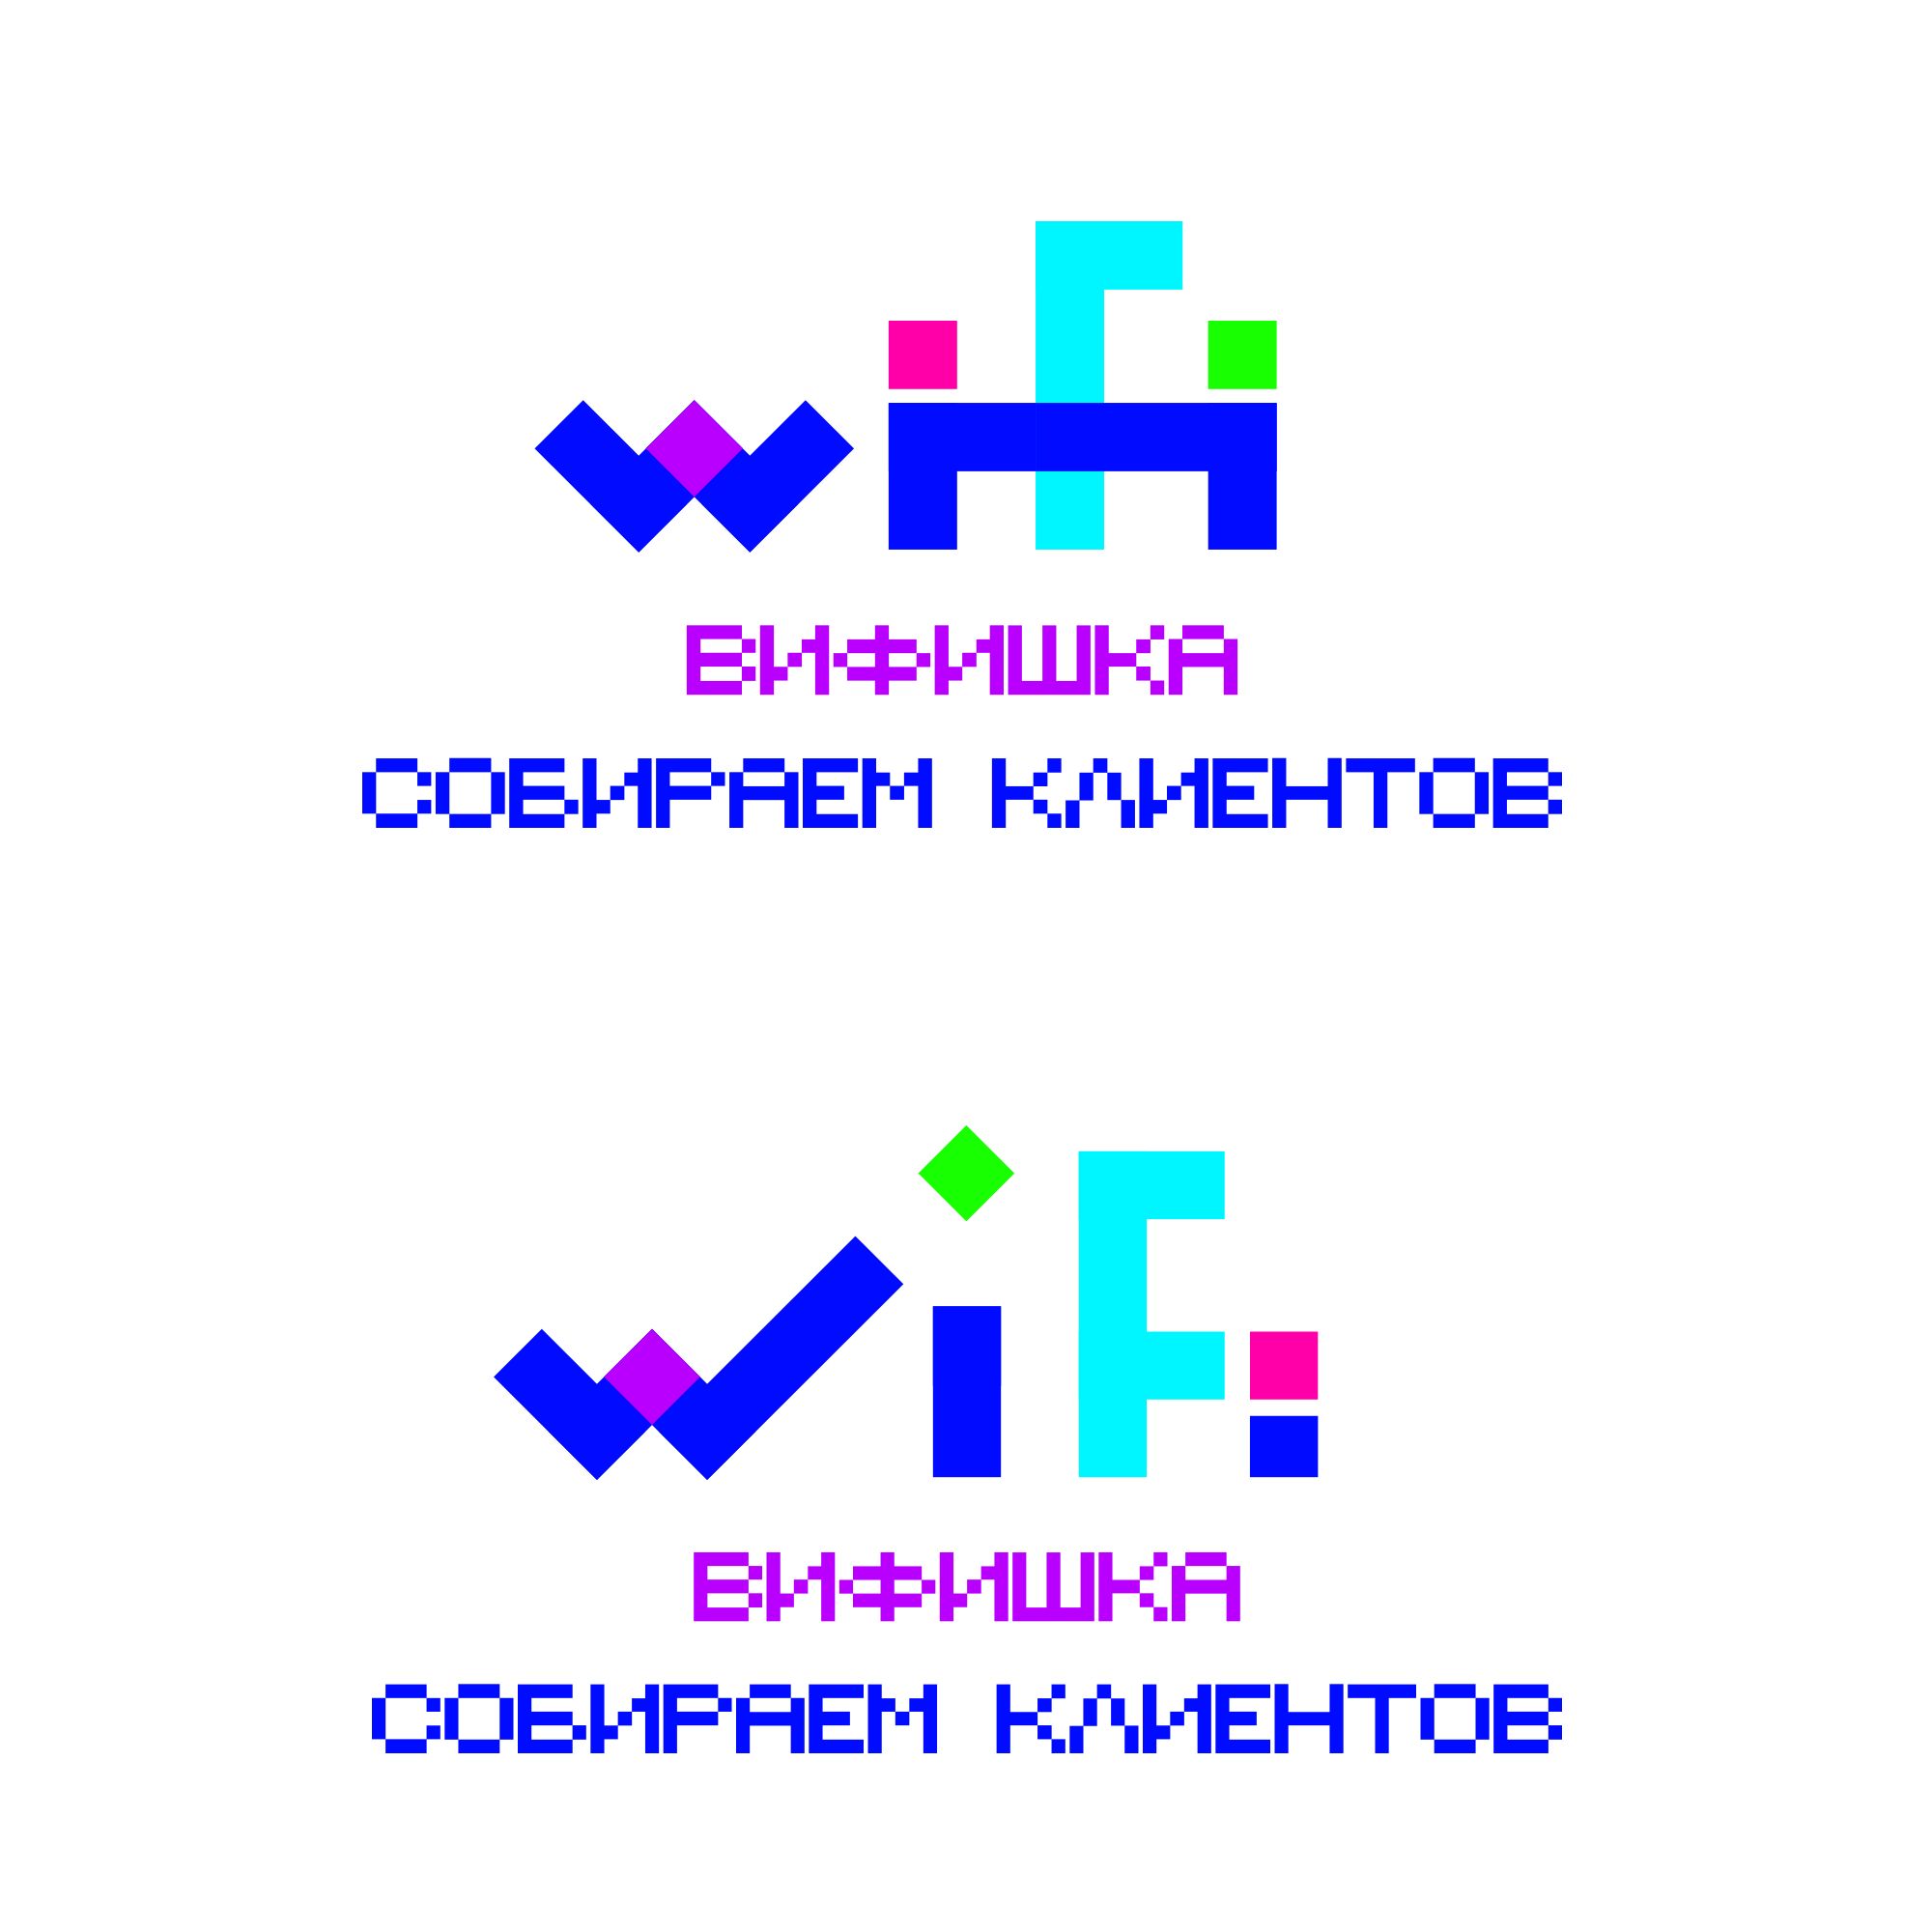 Логотип для для WI-FI сервиса 